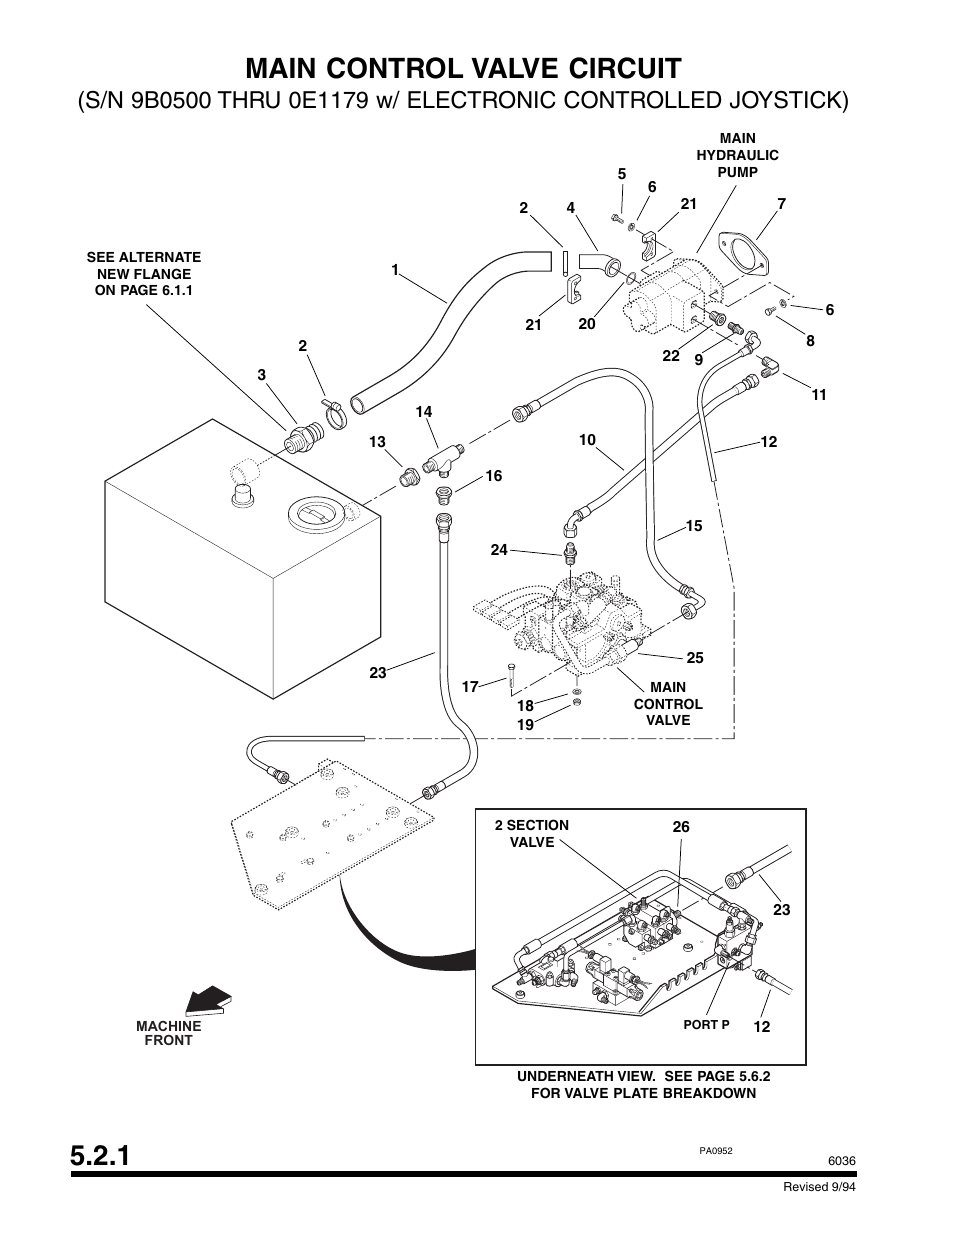 1 main control valve circuit | SkyTrak 6036 Parts Manual User Manual